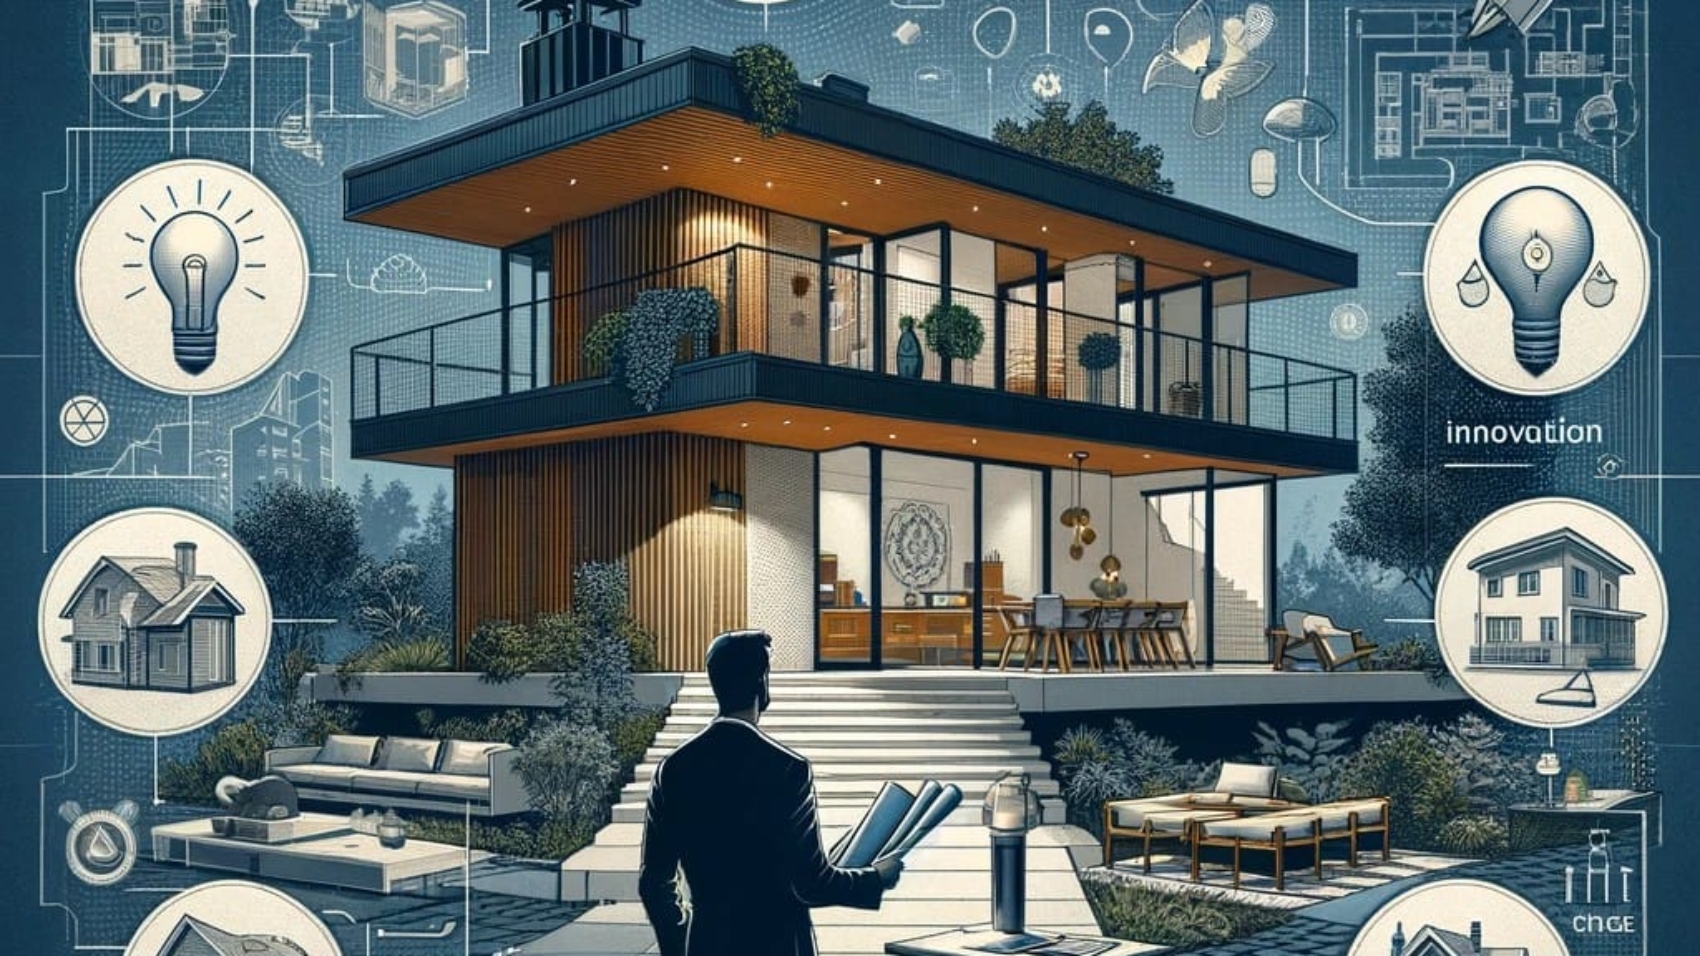 A imagem demonstra um arquiteto especialista em construção civil na plenitude da sua função, levando em consideração todos os aspectos para projetar uma casa linda e funcional